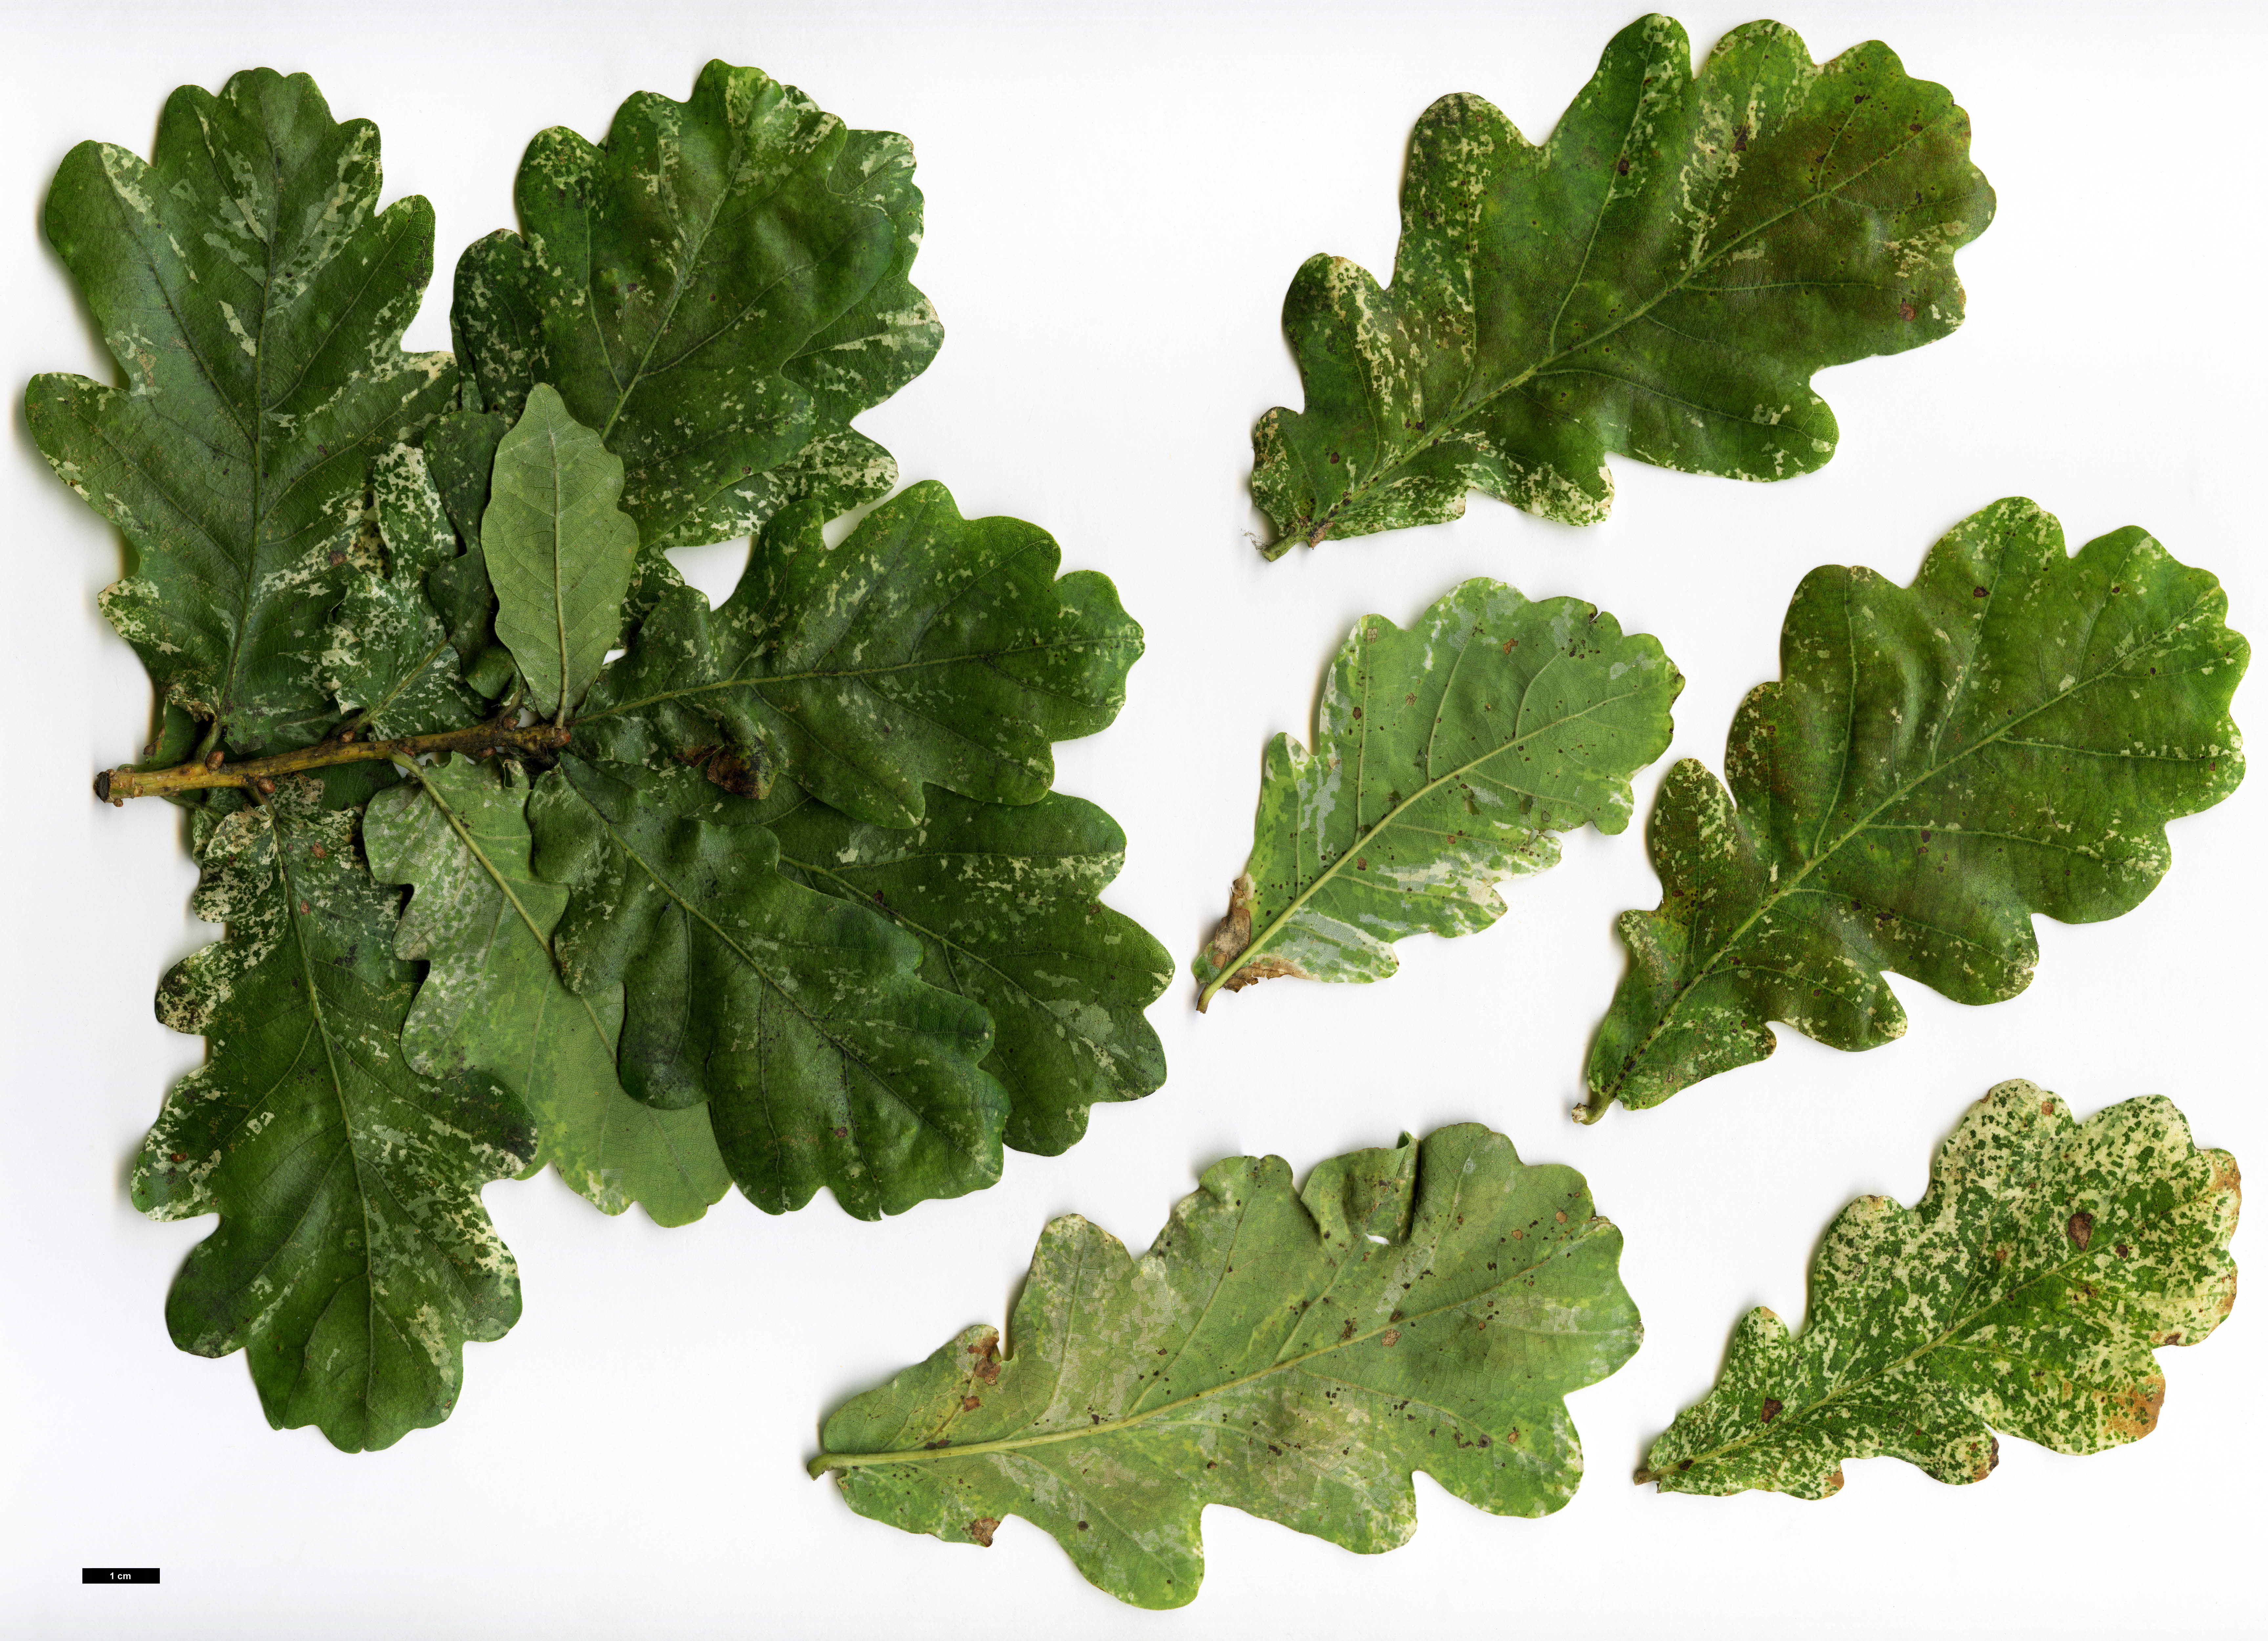 High resolution image: Family: Fagaceae - Genus: Quercus - Taxon: robur - SpeciesSub: 'Latimaculata'